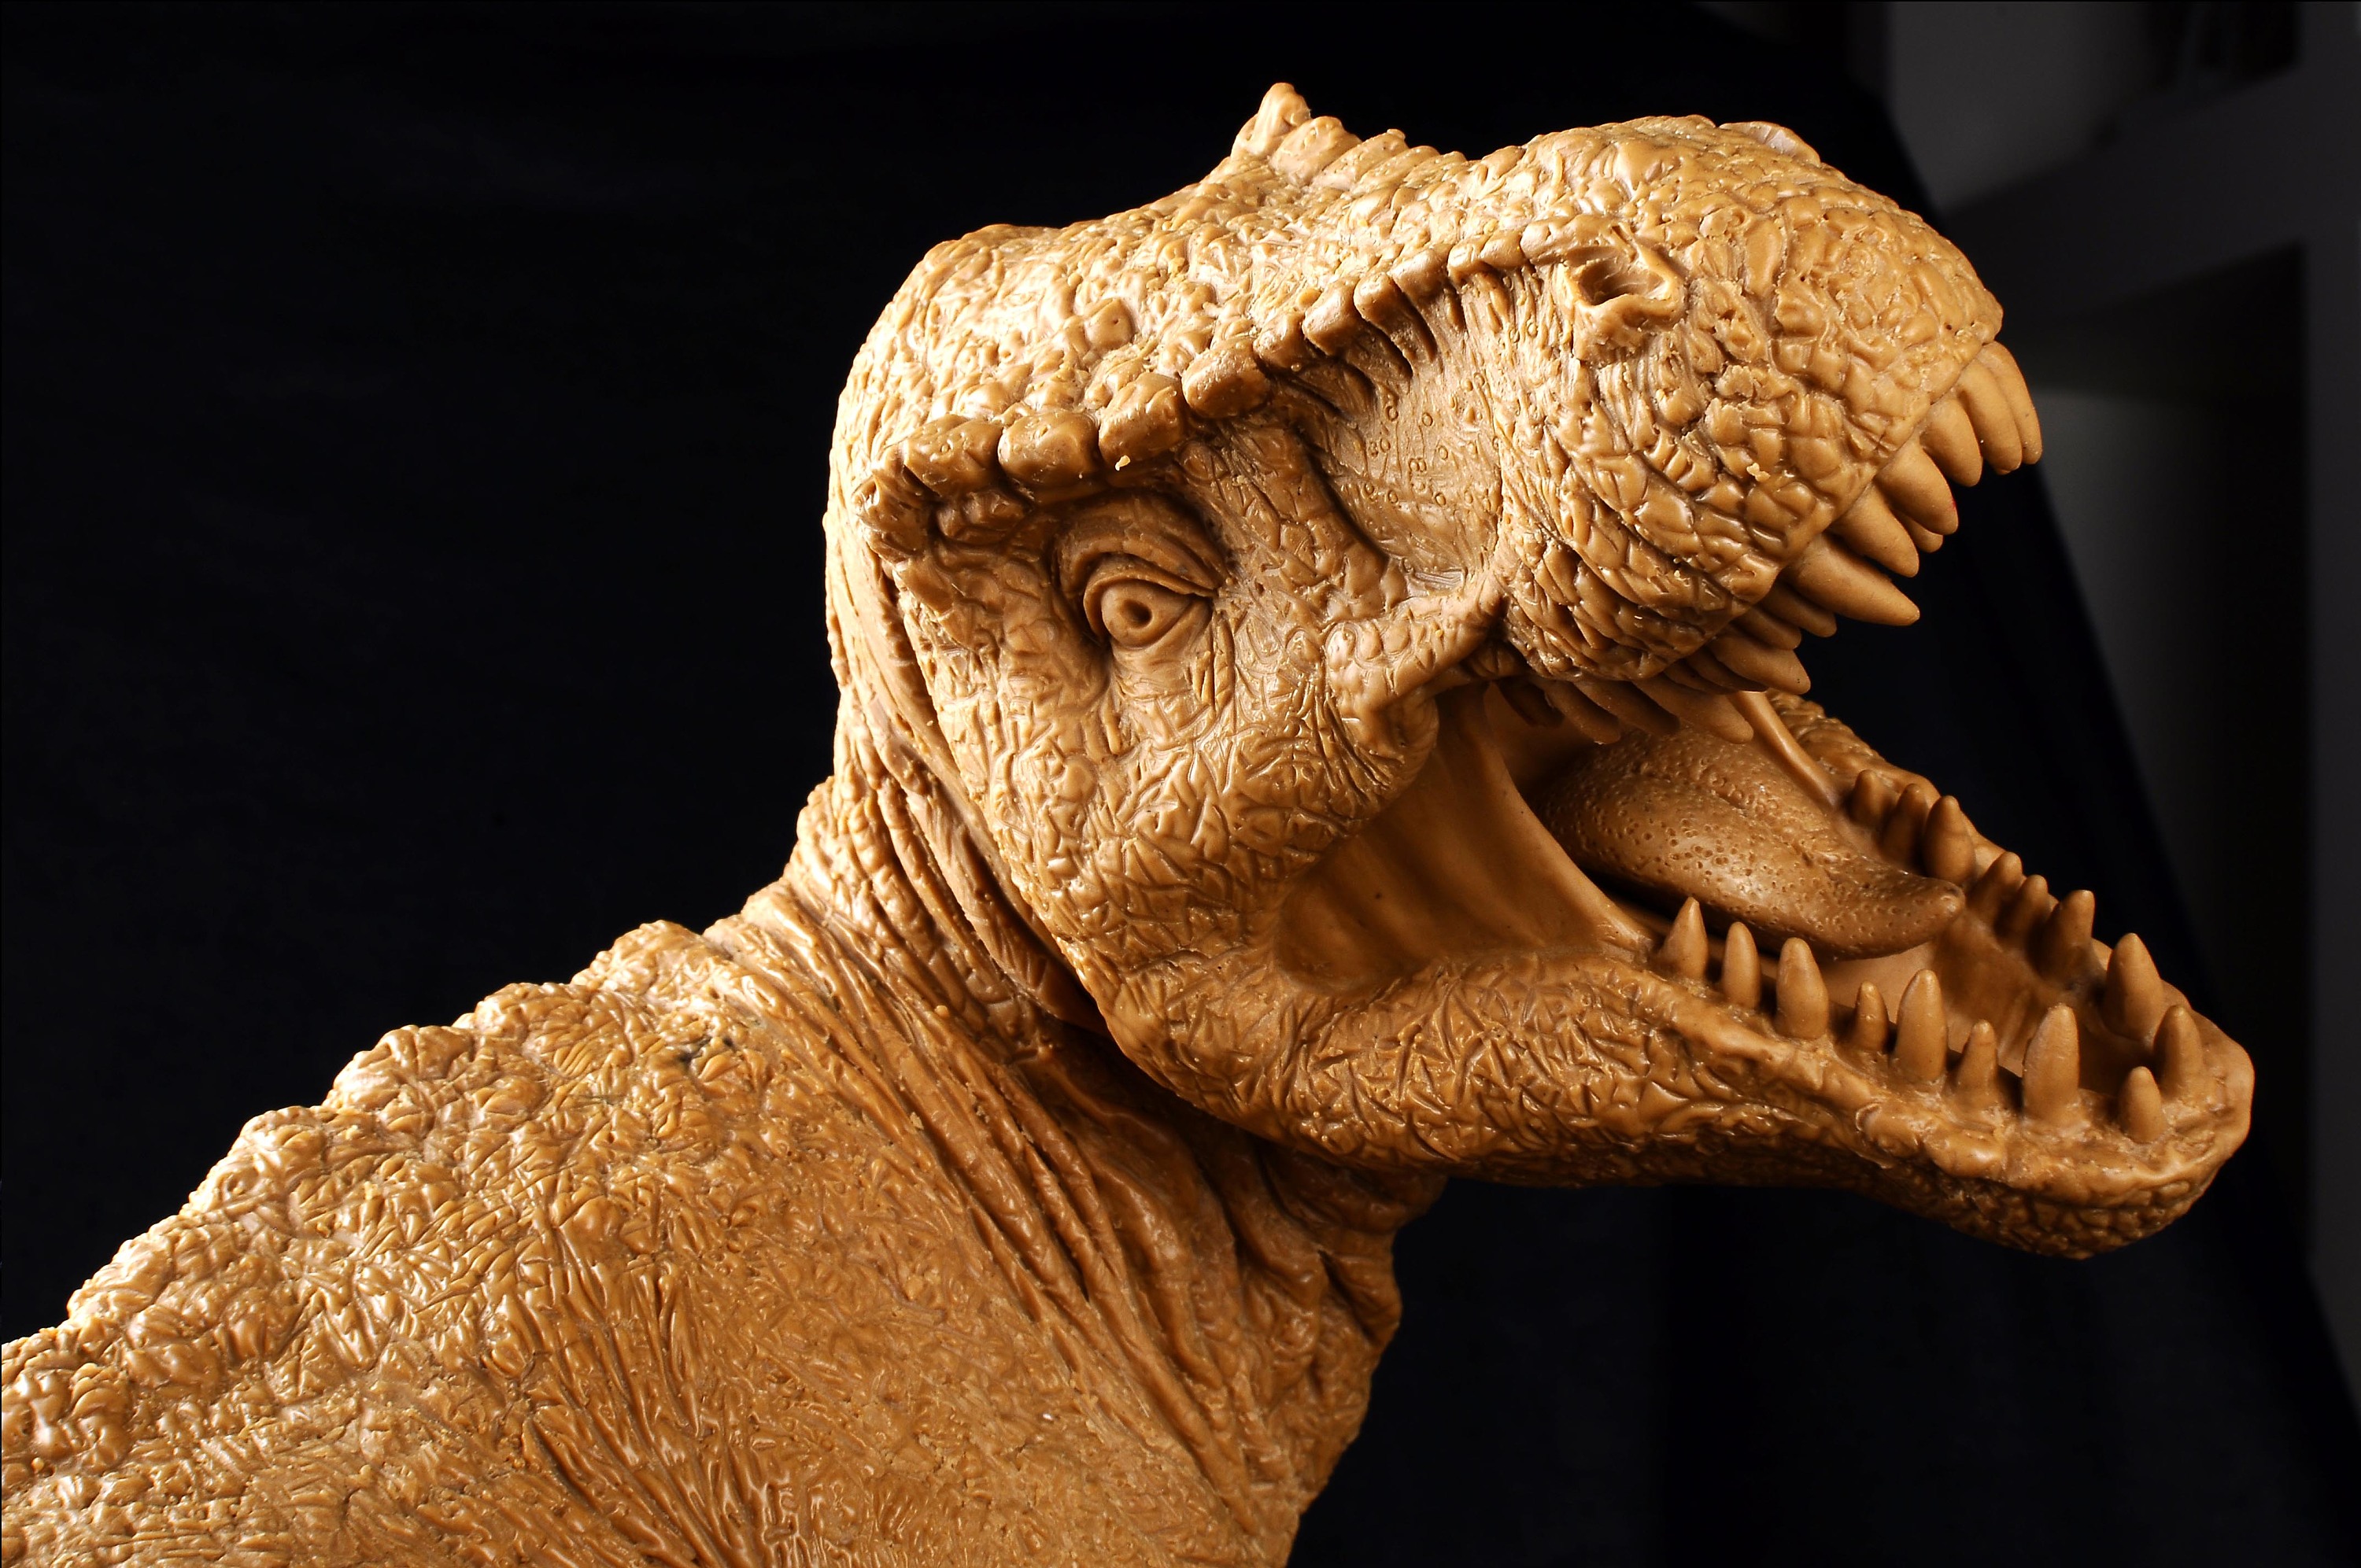 超写实恐龙--T-Rex霸王龙、Styracosaurus戟龙、Triceratops三角龙|手工艺|手办/原型|anli104 - 原创作品 ...